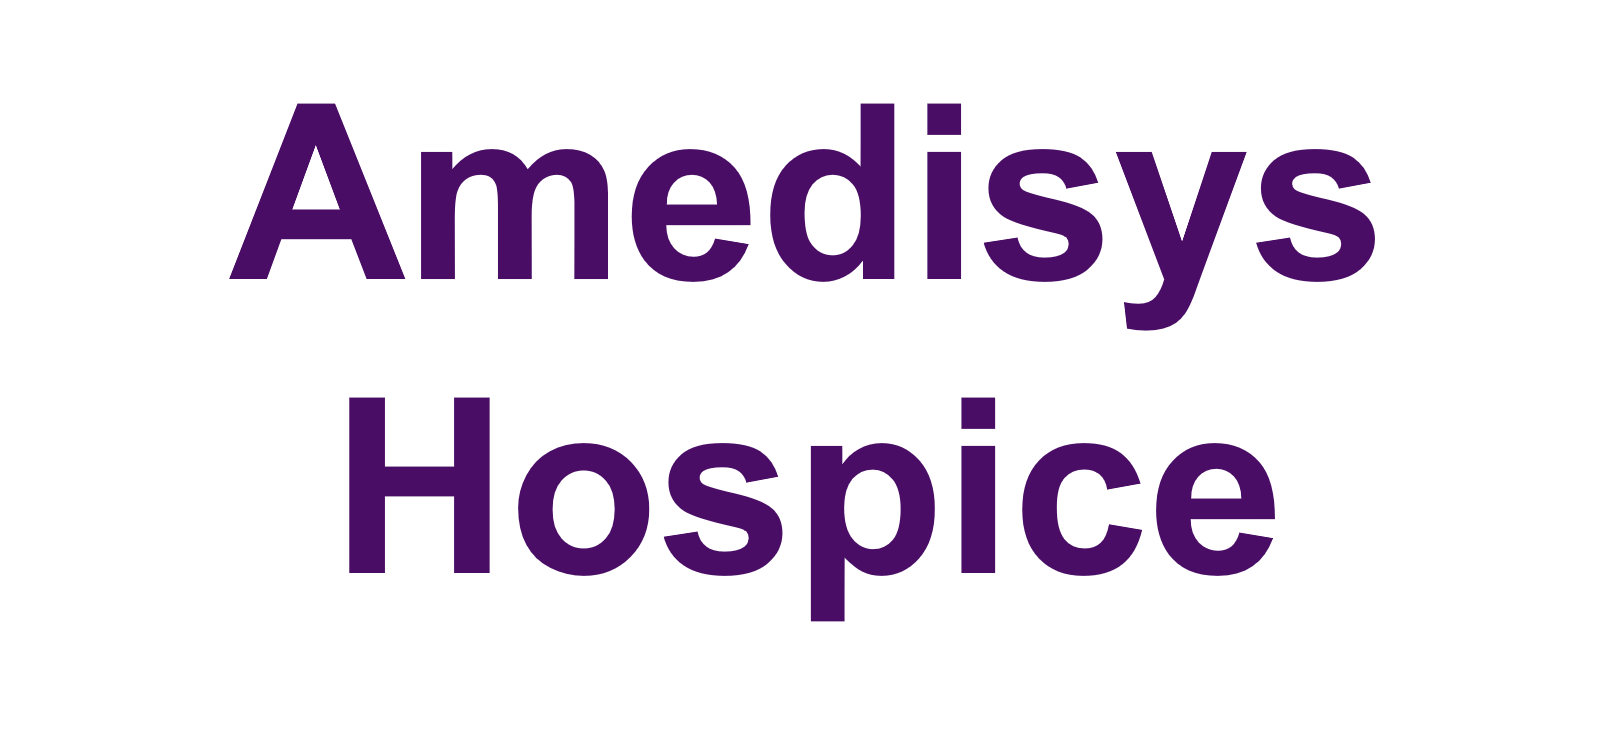 7b. Amedisys Hospice (Amigo)